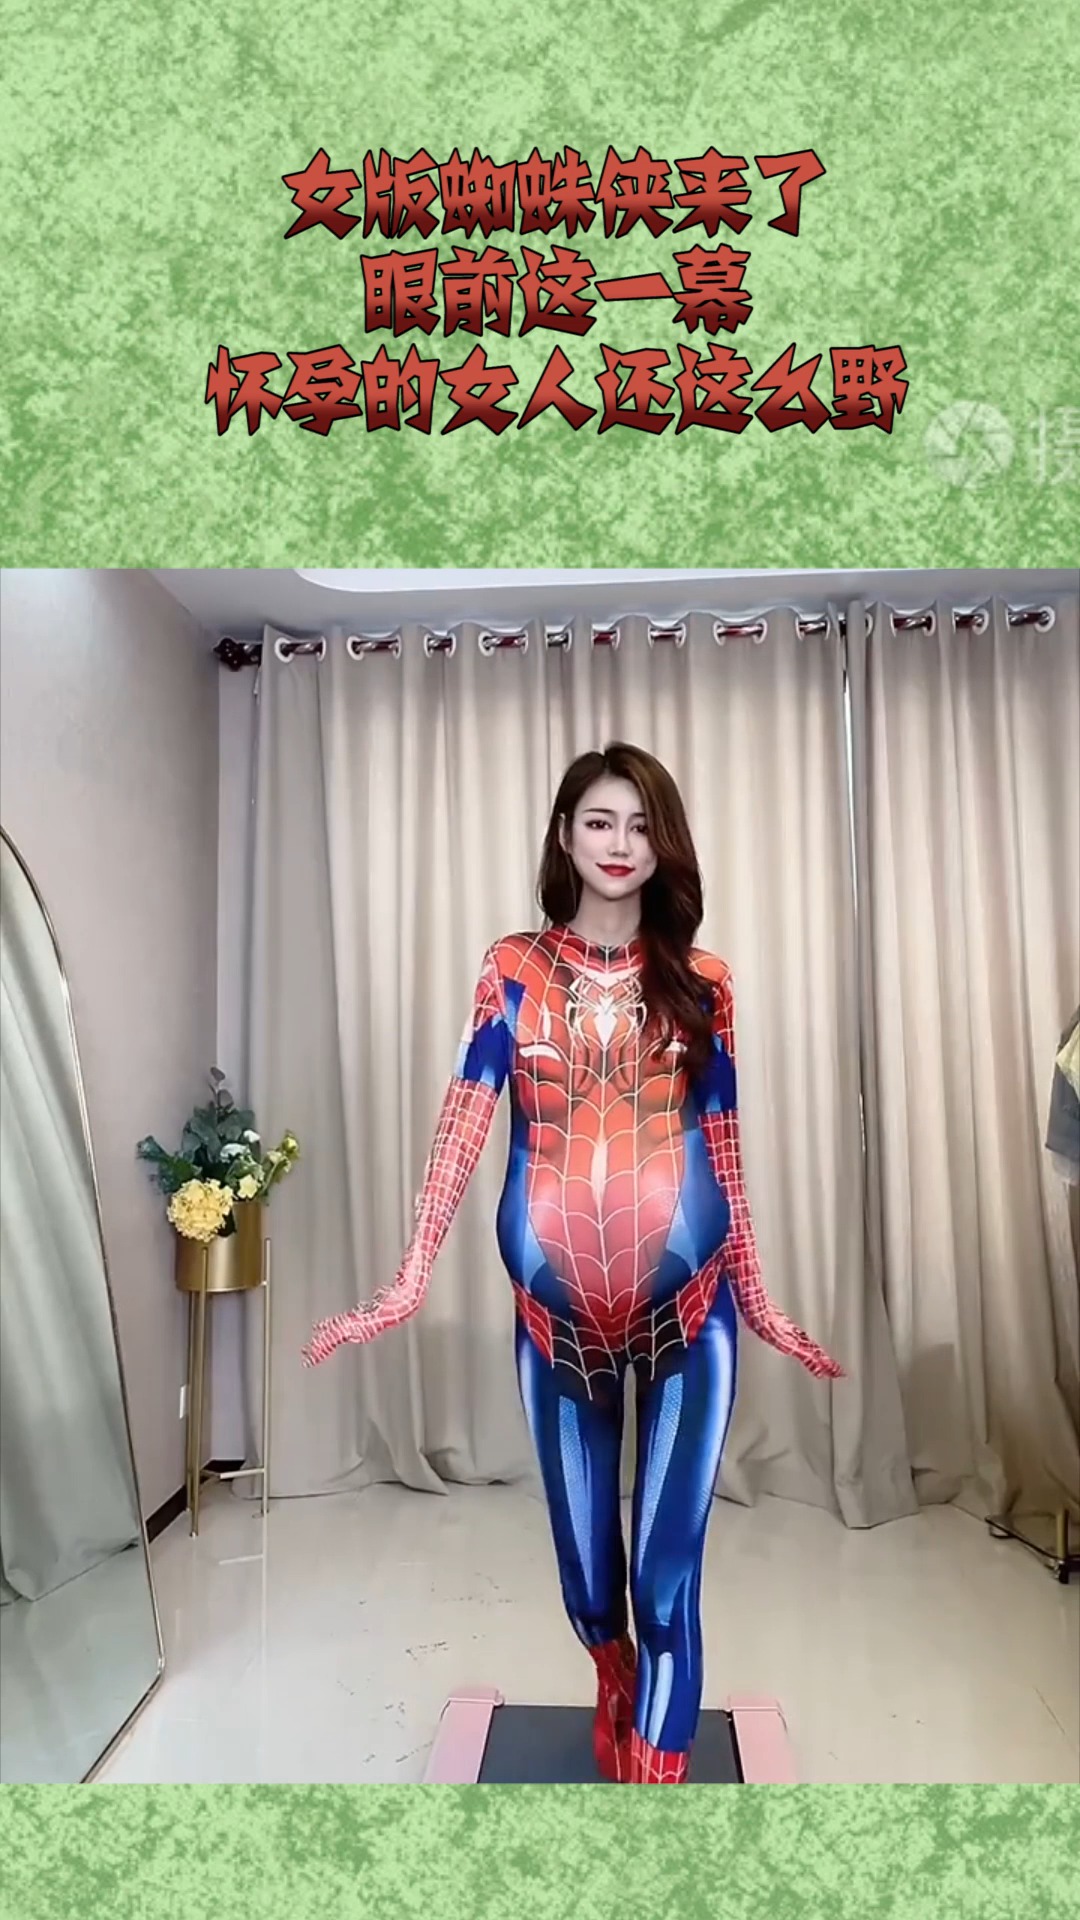 女版蜘蛛侠来了,眼前这一幕,怀孕的女人还这么野